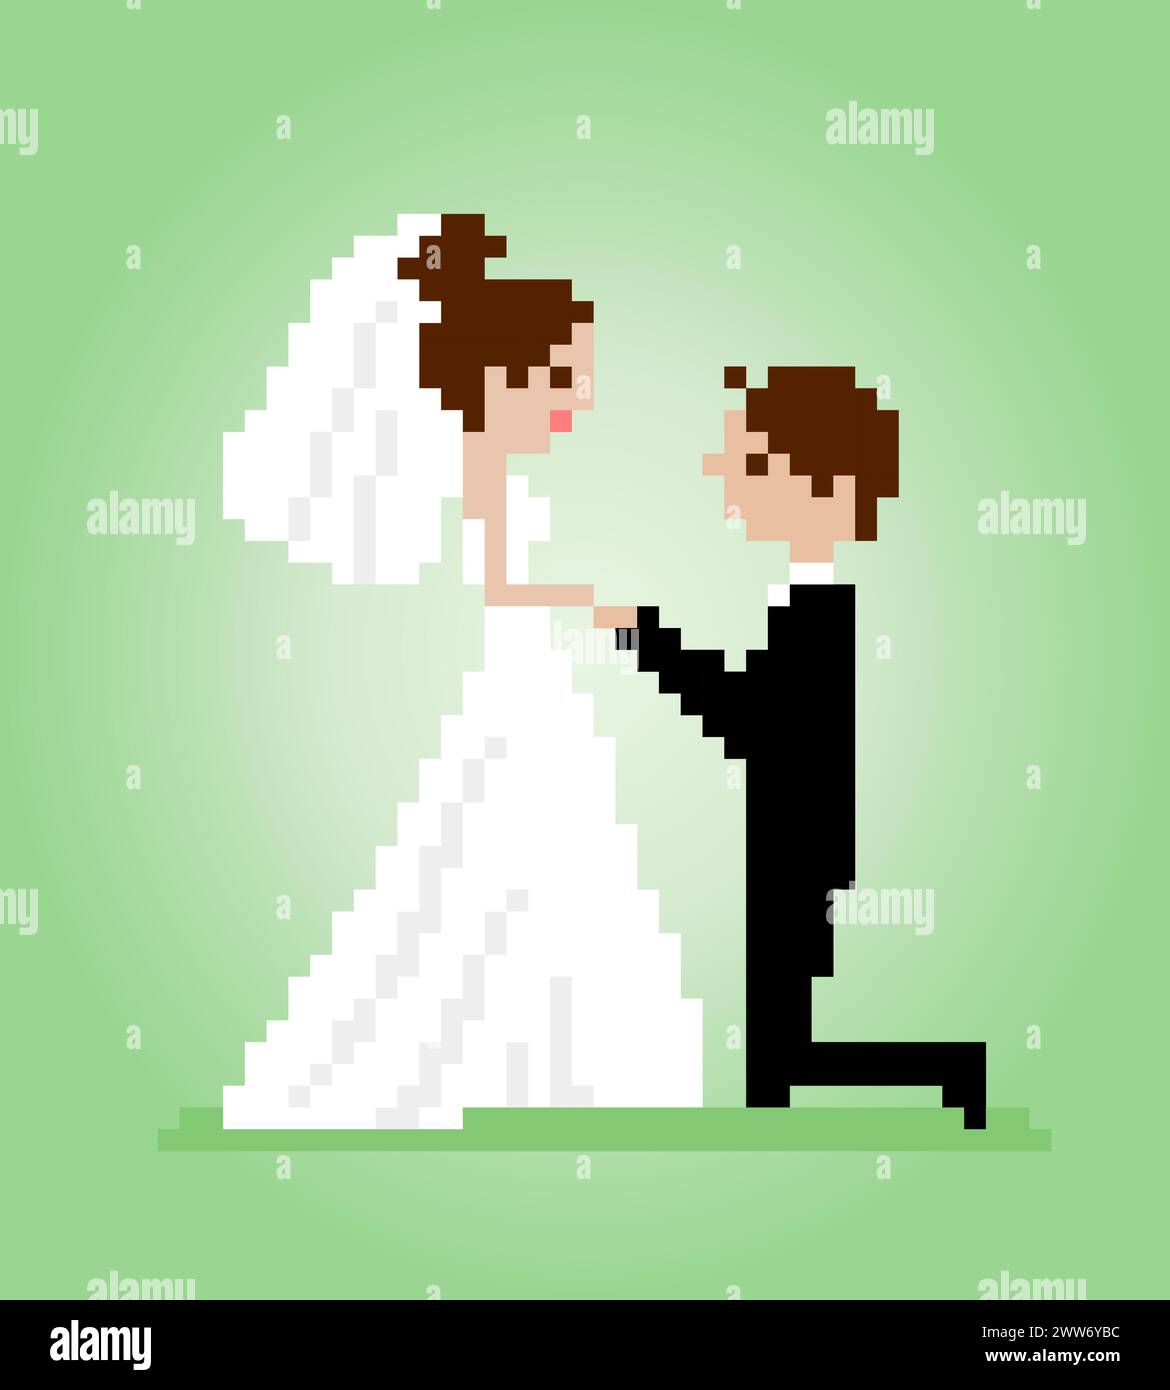 8-Bit-Pixel von Männern beantragen, dass eine Frau ihn heiratet. Werden Sie mein Pixel in Vektorillustrationen für Spielelemente oder Kreuzstichmuster sein? Stock Vektor